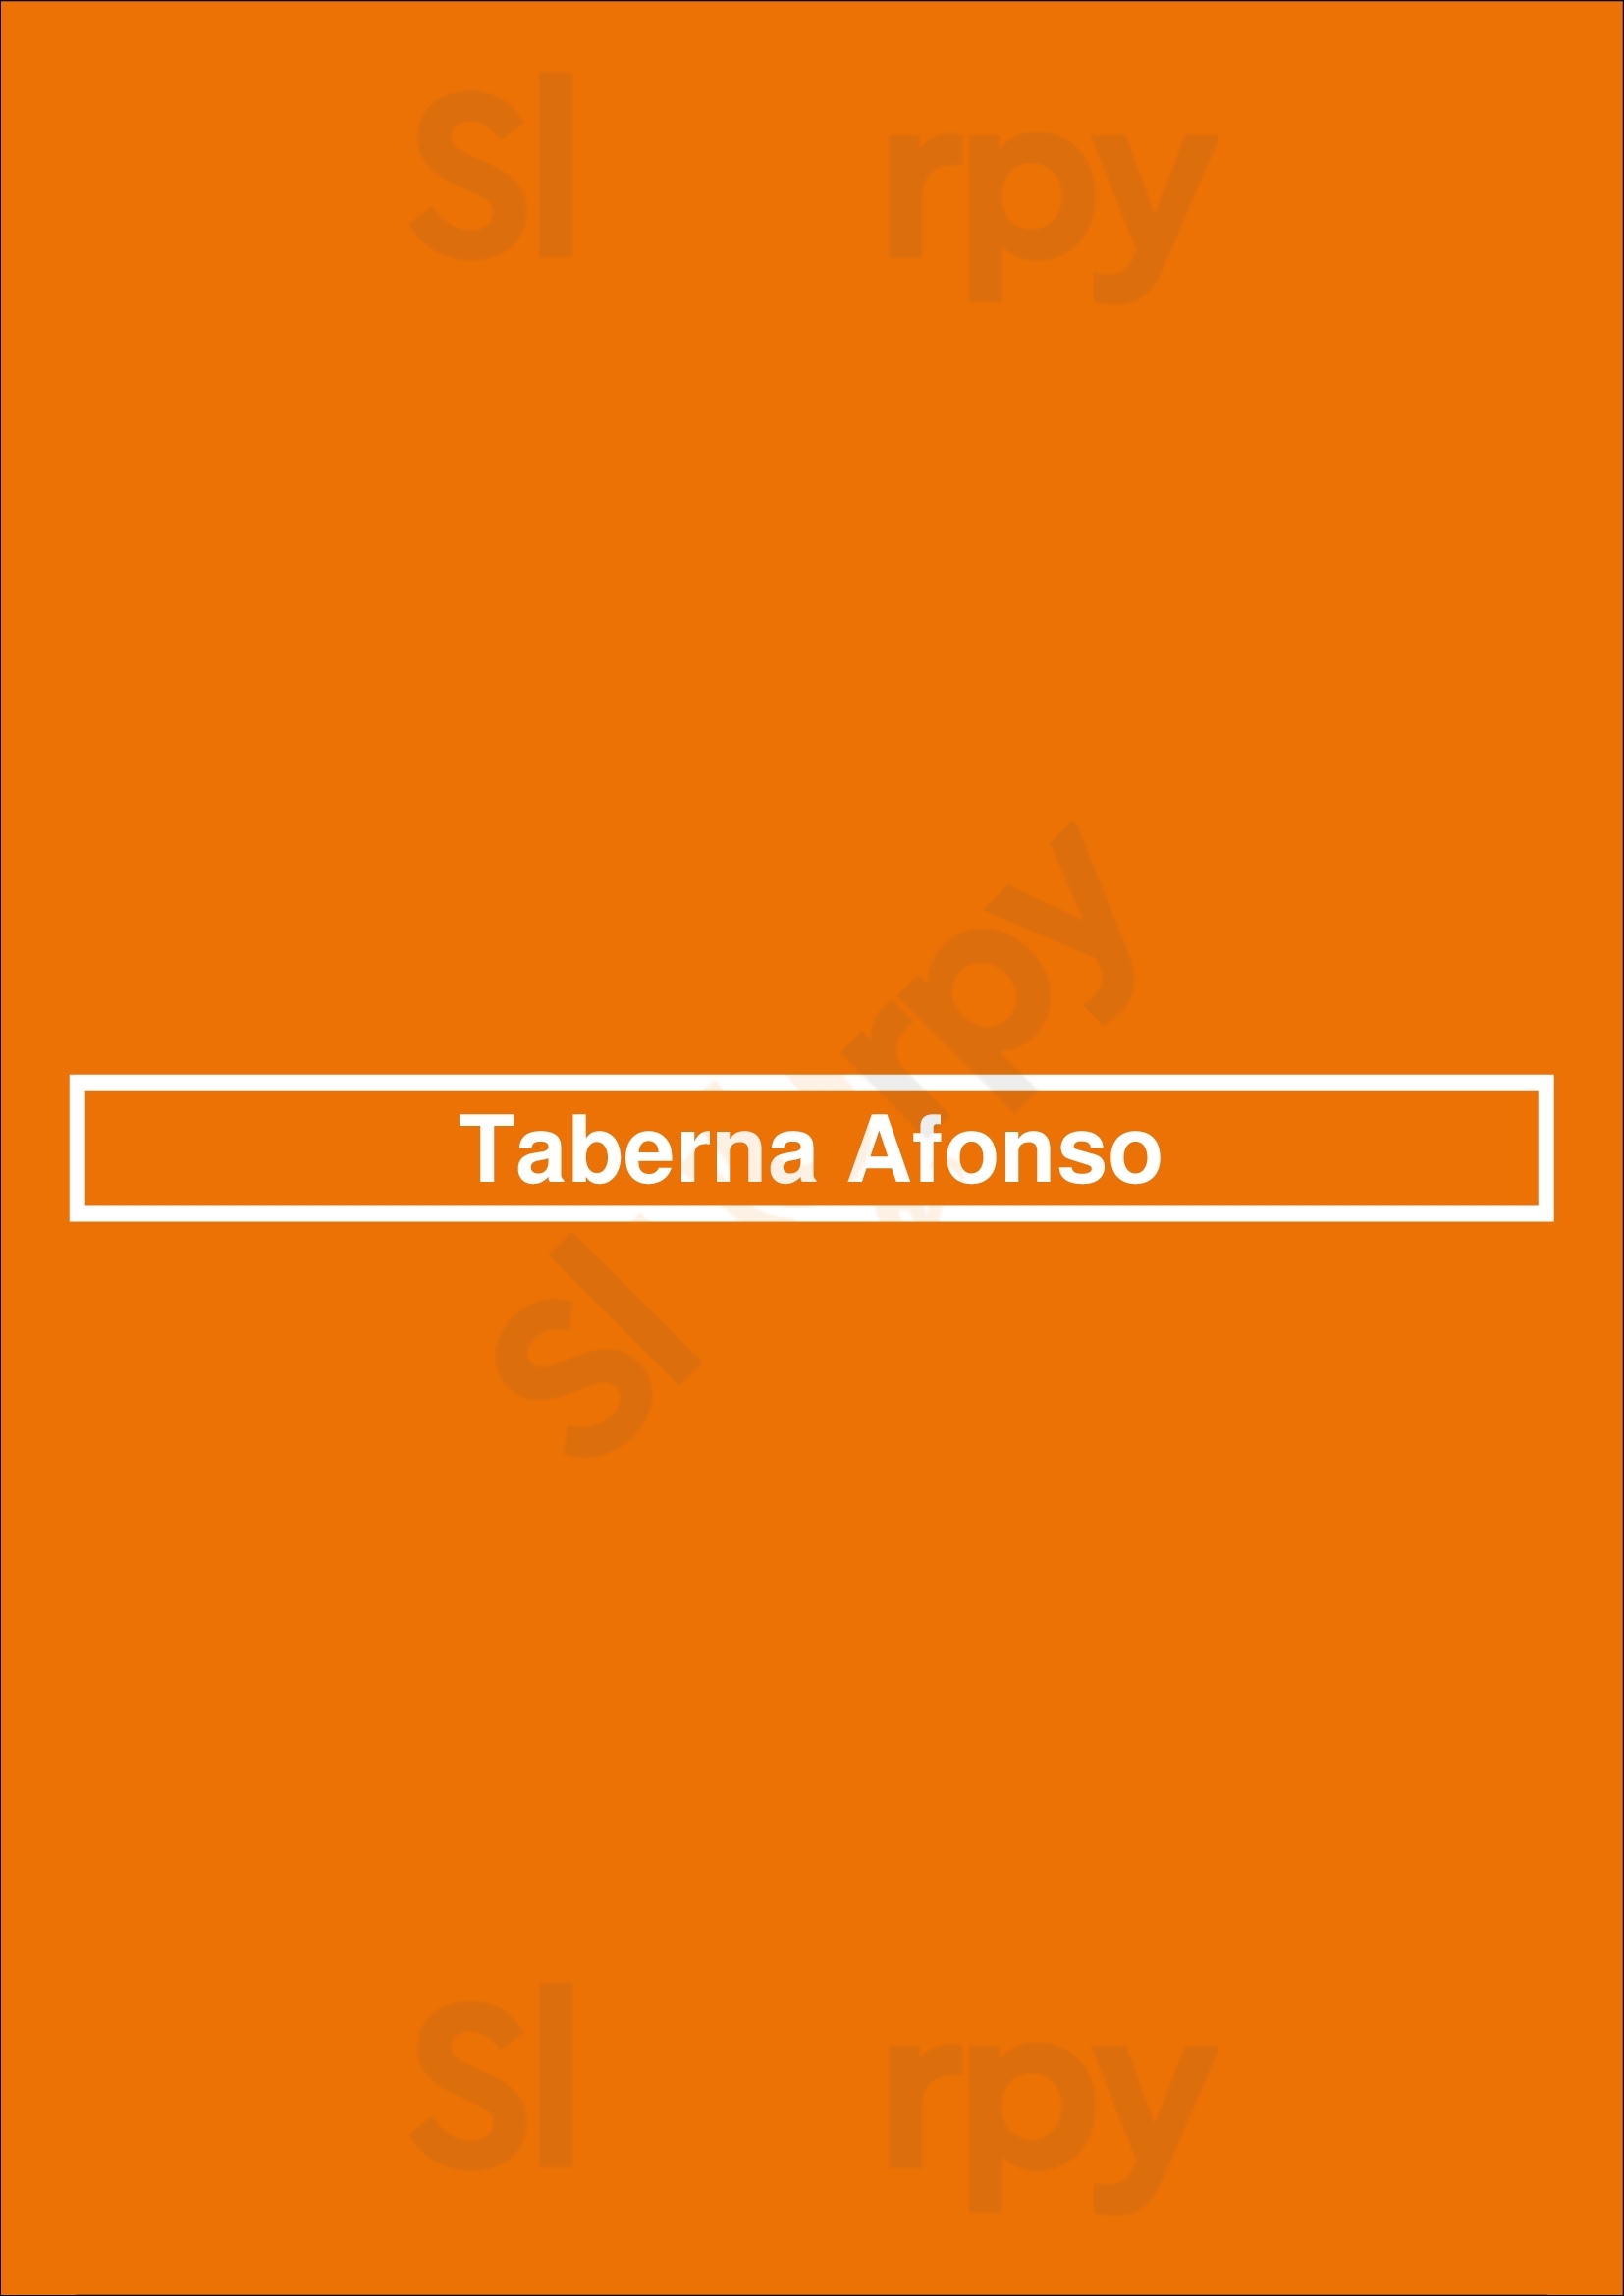 Taberna Afonso Ponte de Lima Menu - 1